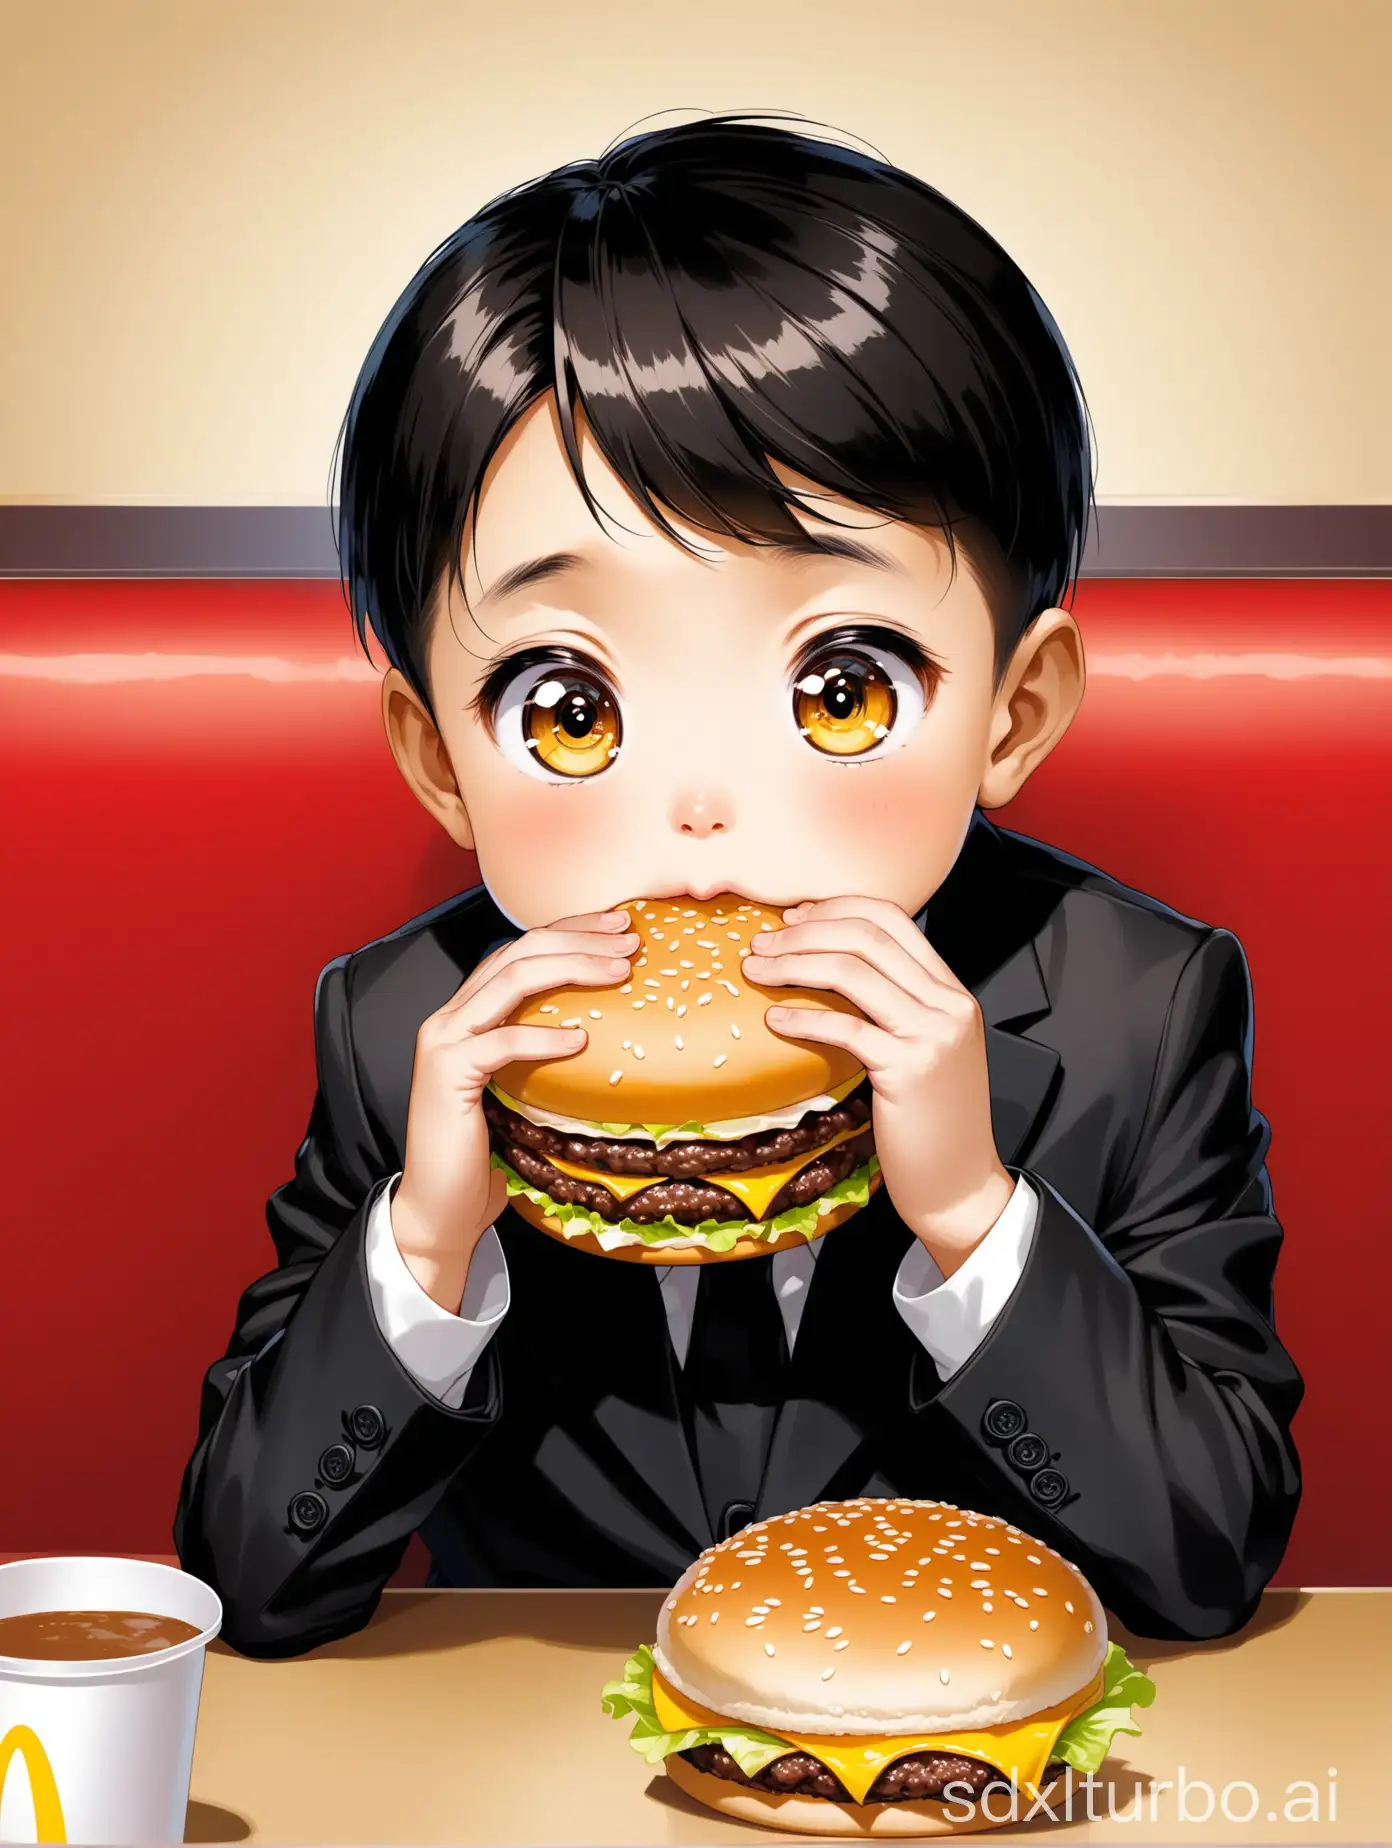 Young-Chinese-Boy-Enjoying-McDonalds-Burger-at-Table